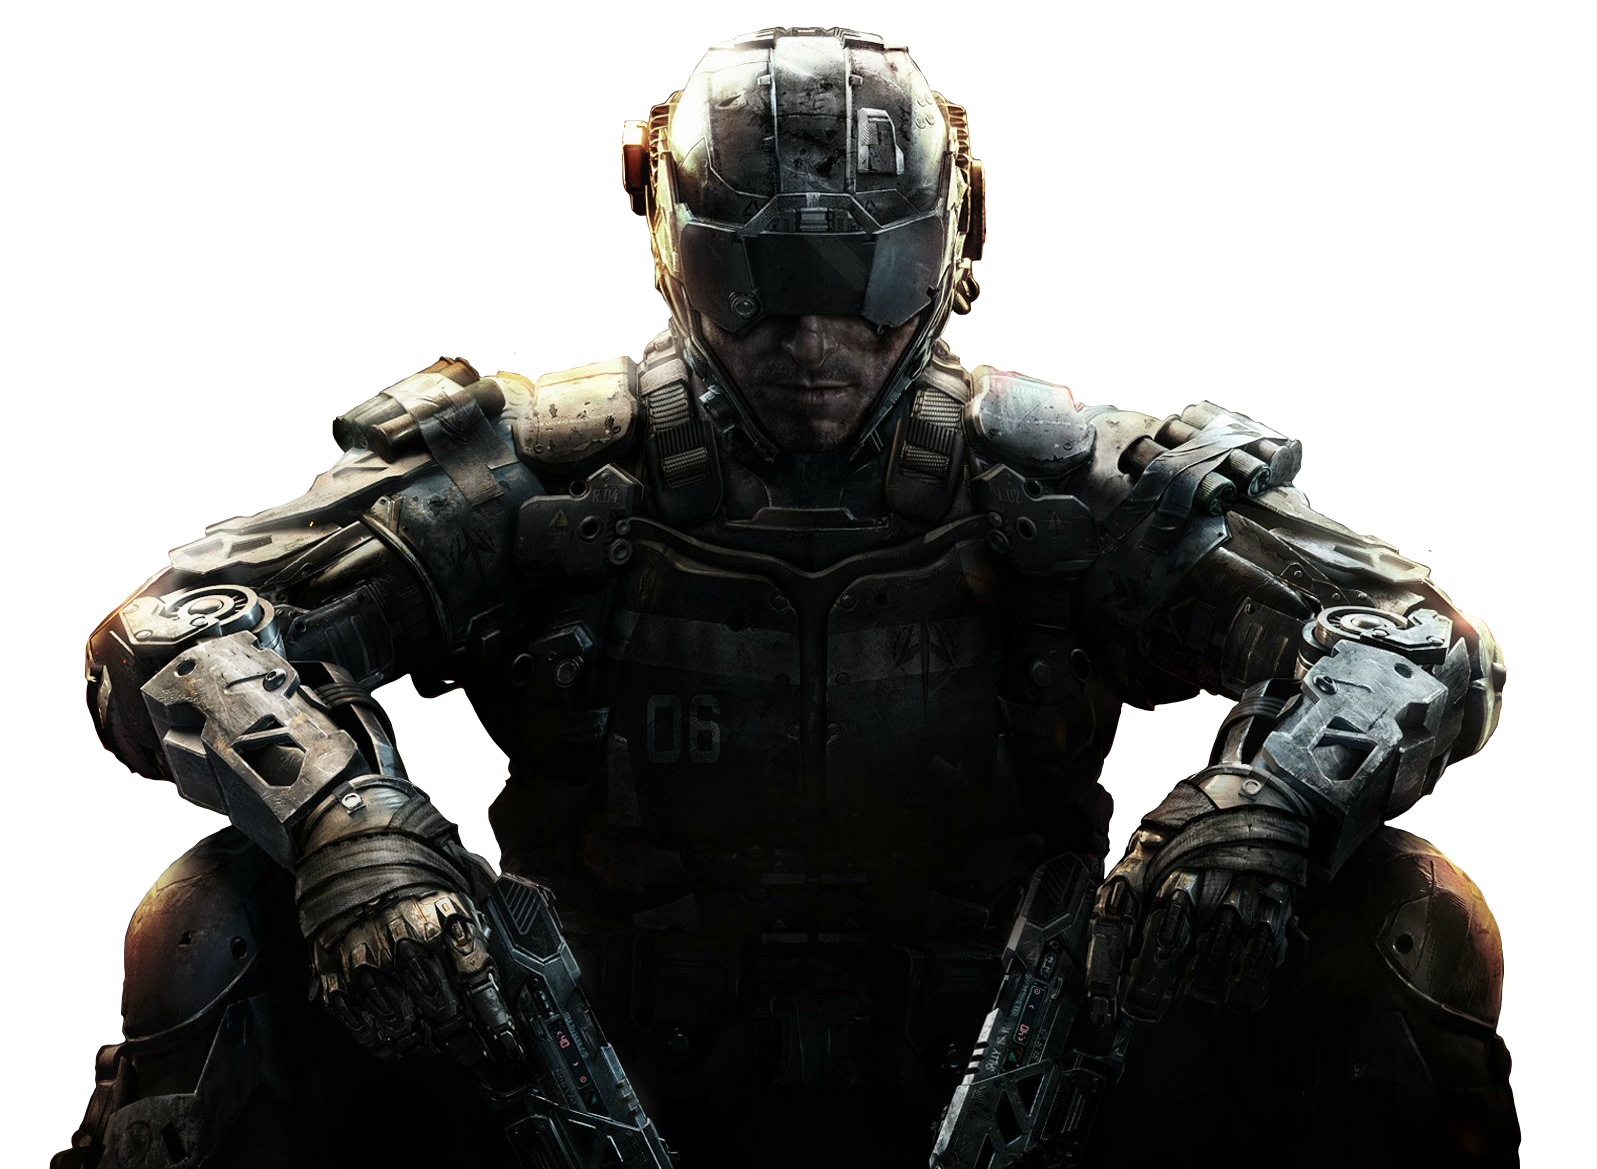 47+] Call of Duty BO3 Wallpapers - WallpaperSafari